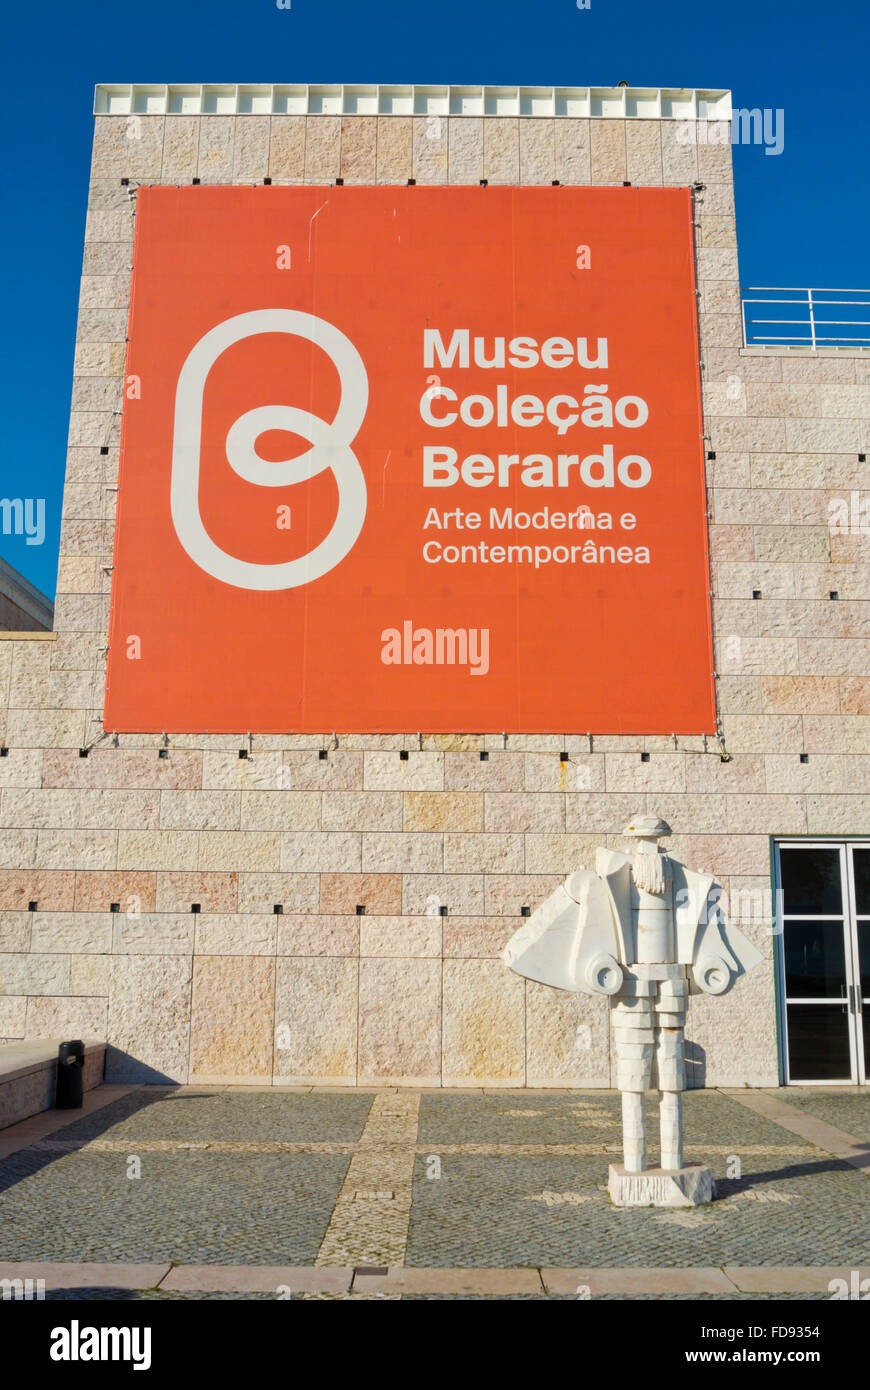 Museu Colecao Berardo, art museum, Centro Cultural de Belem, Belem, Lisbon, Portugal Stock Photo